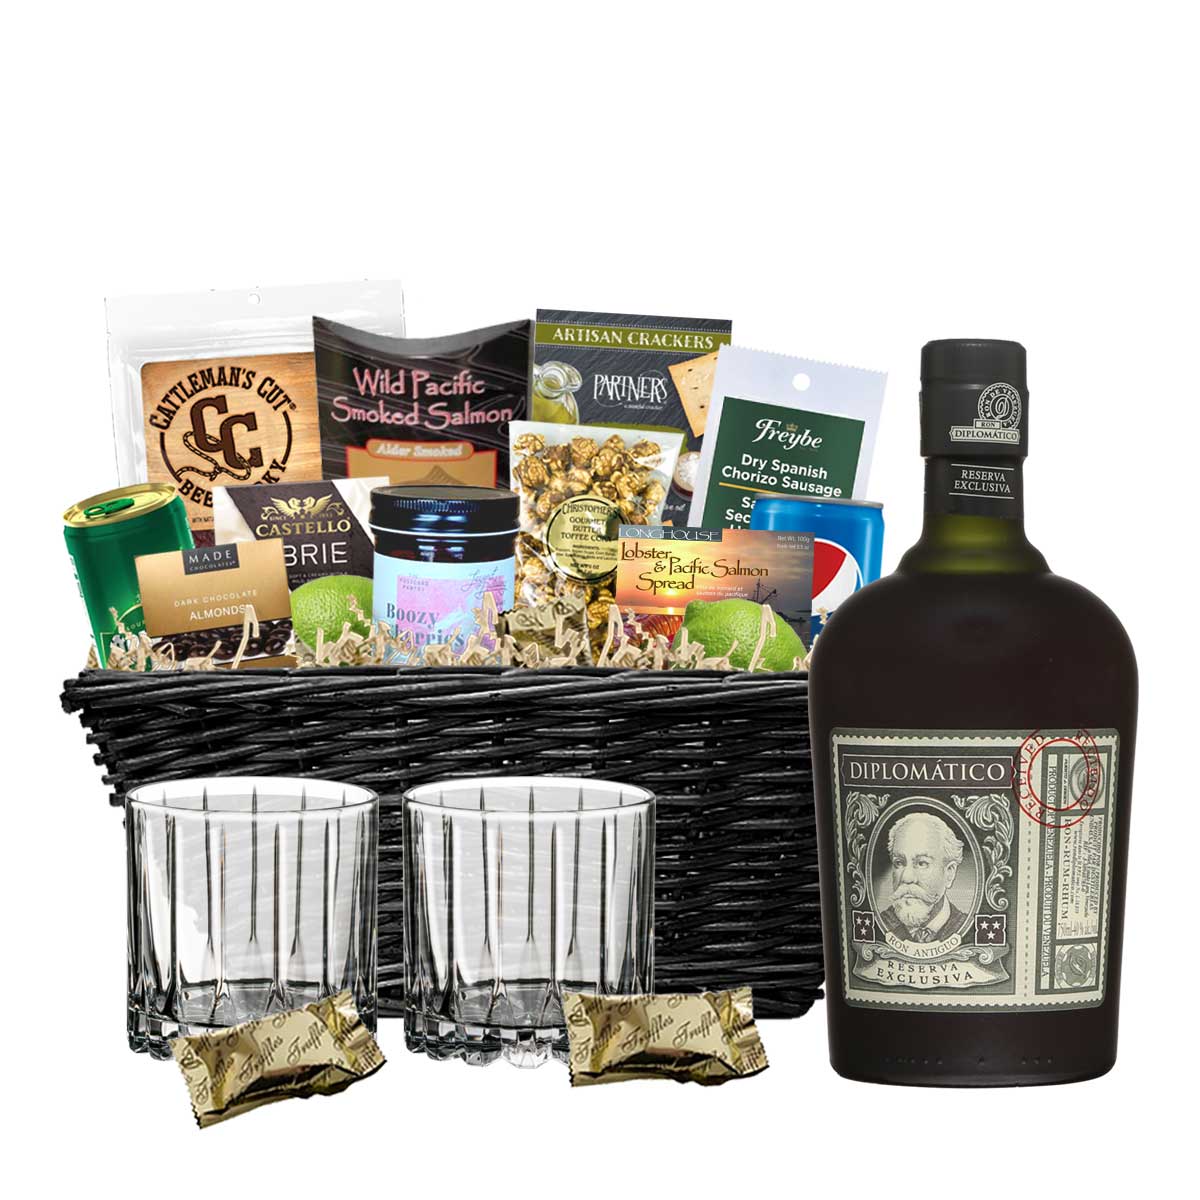 TAG Liquor Stores BC - Diplomatico Reserva Exclusiva Rum 750ml Gift Basket